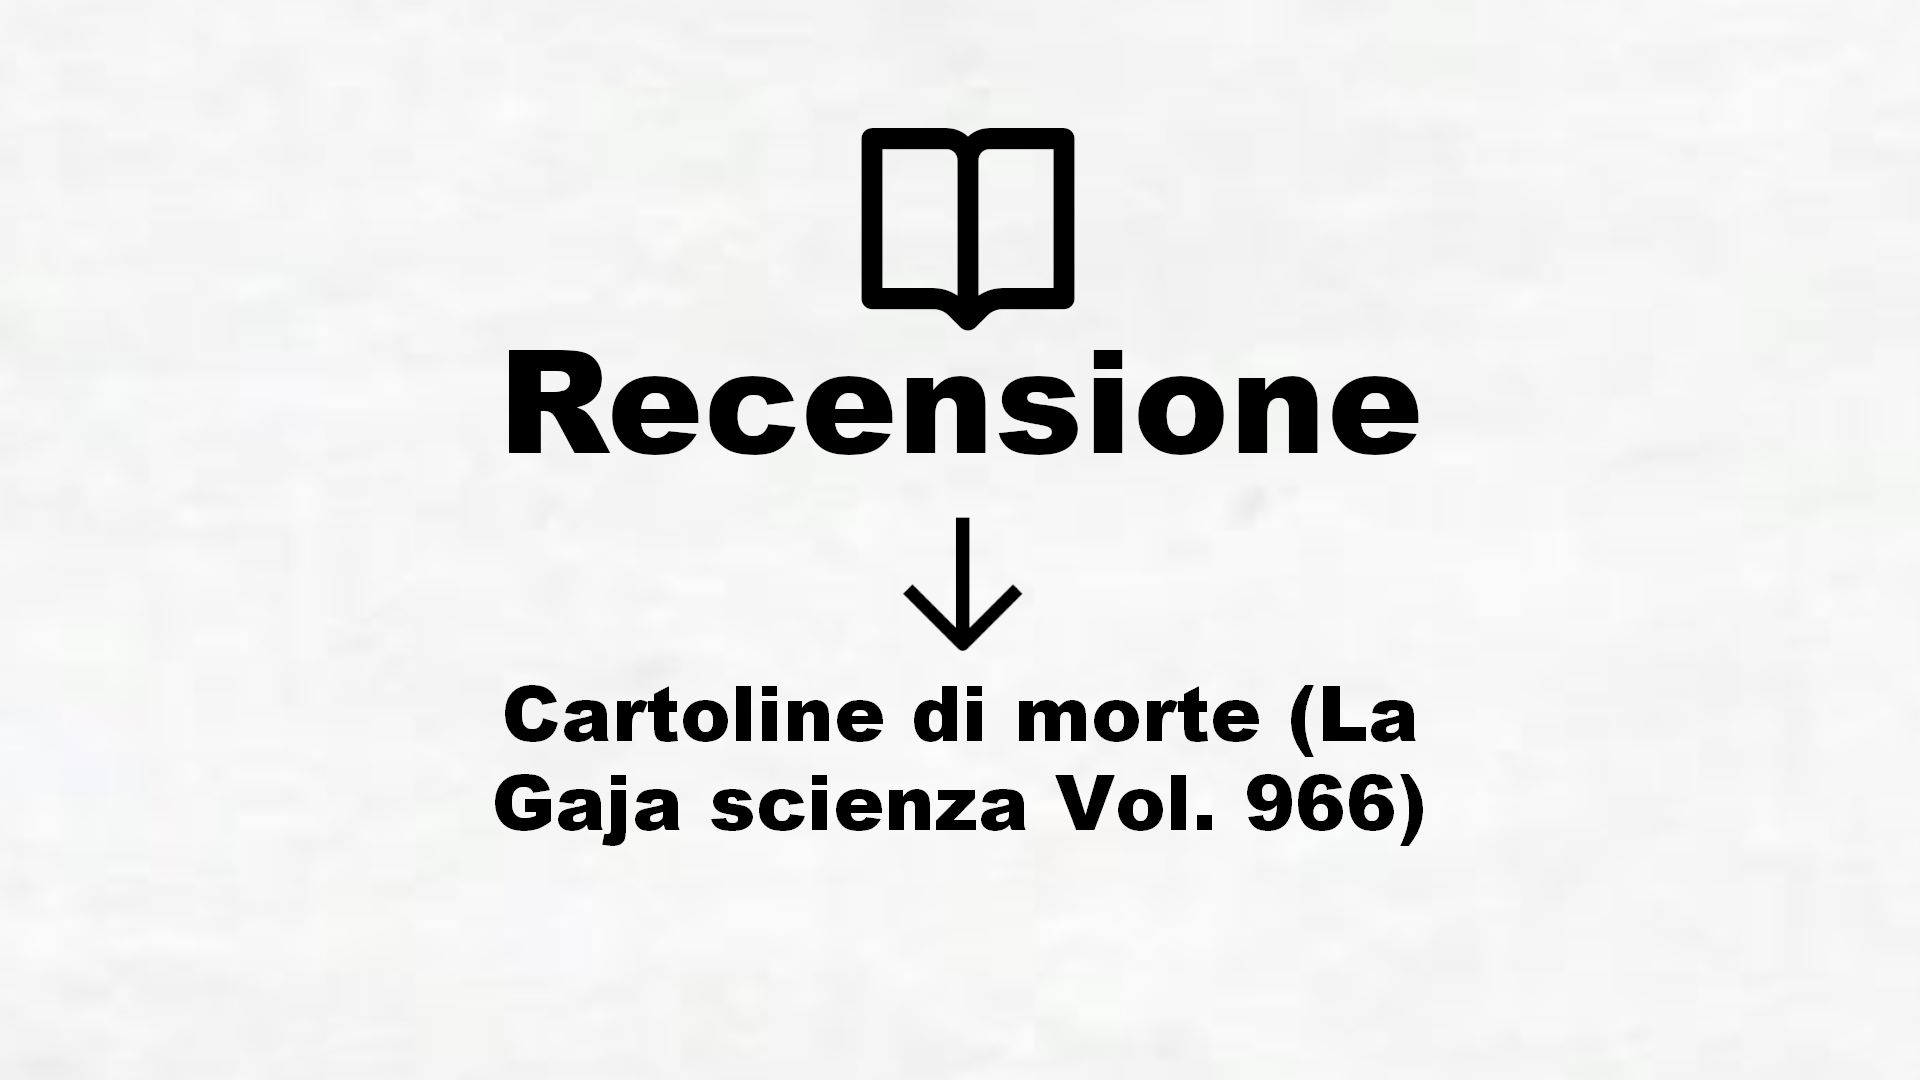 Cartoline di morte (La Gaja scienza Vol. 966) – Recensione Libro